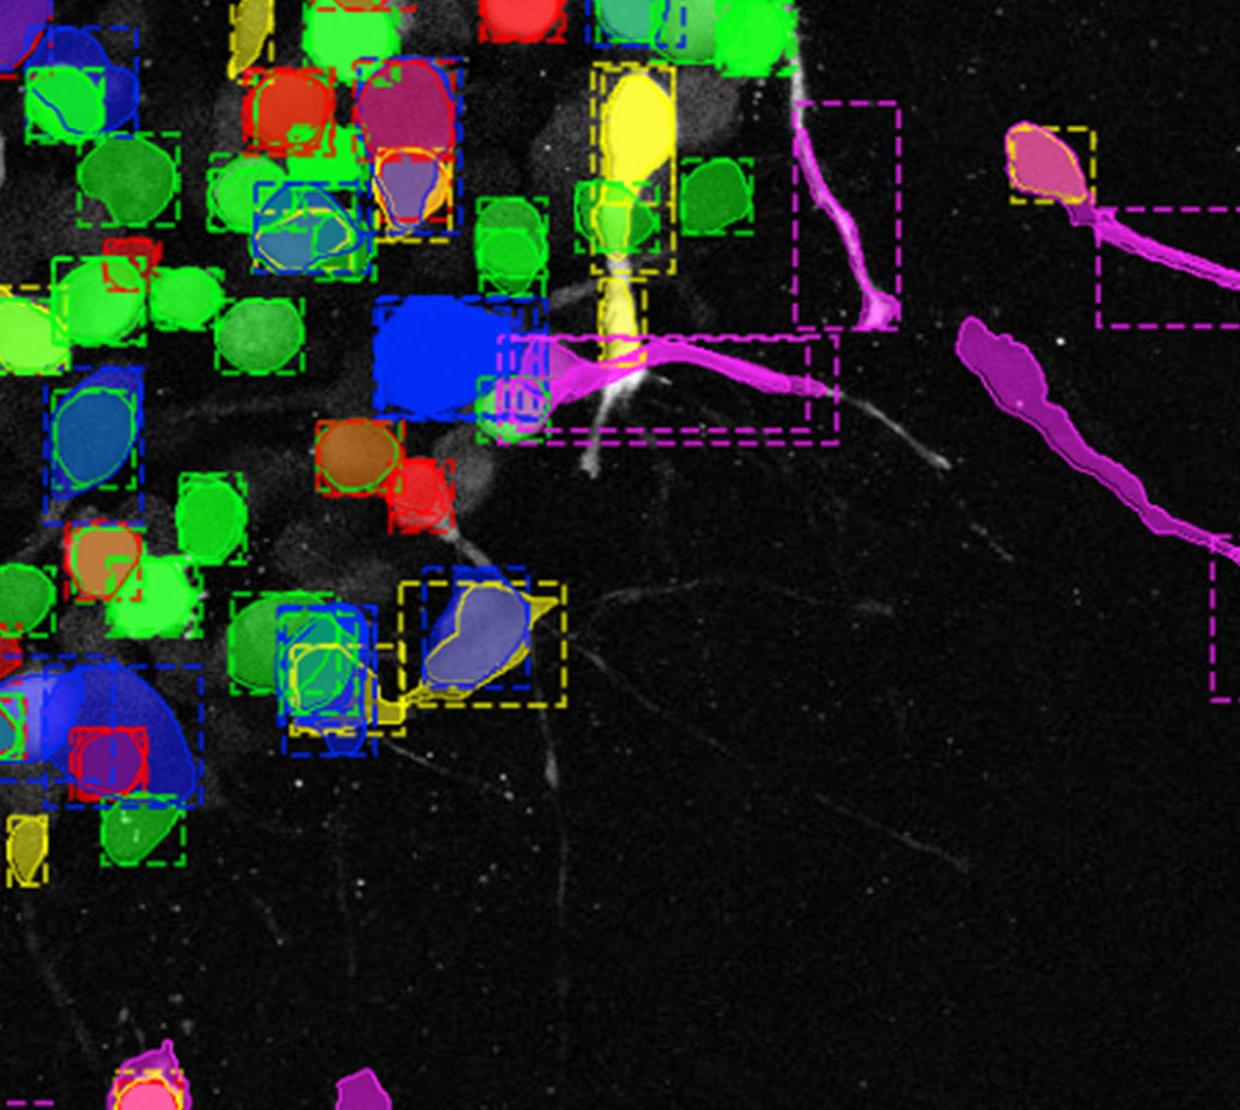 Digital image of cancer cells migrating.